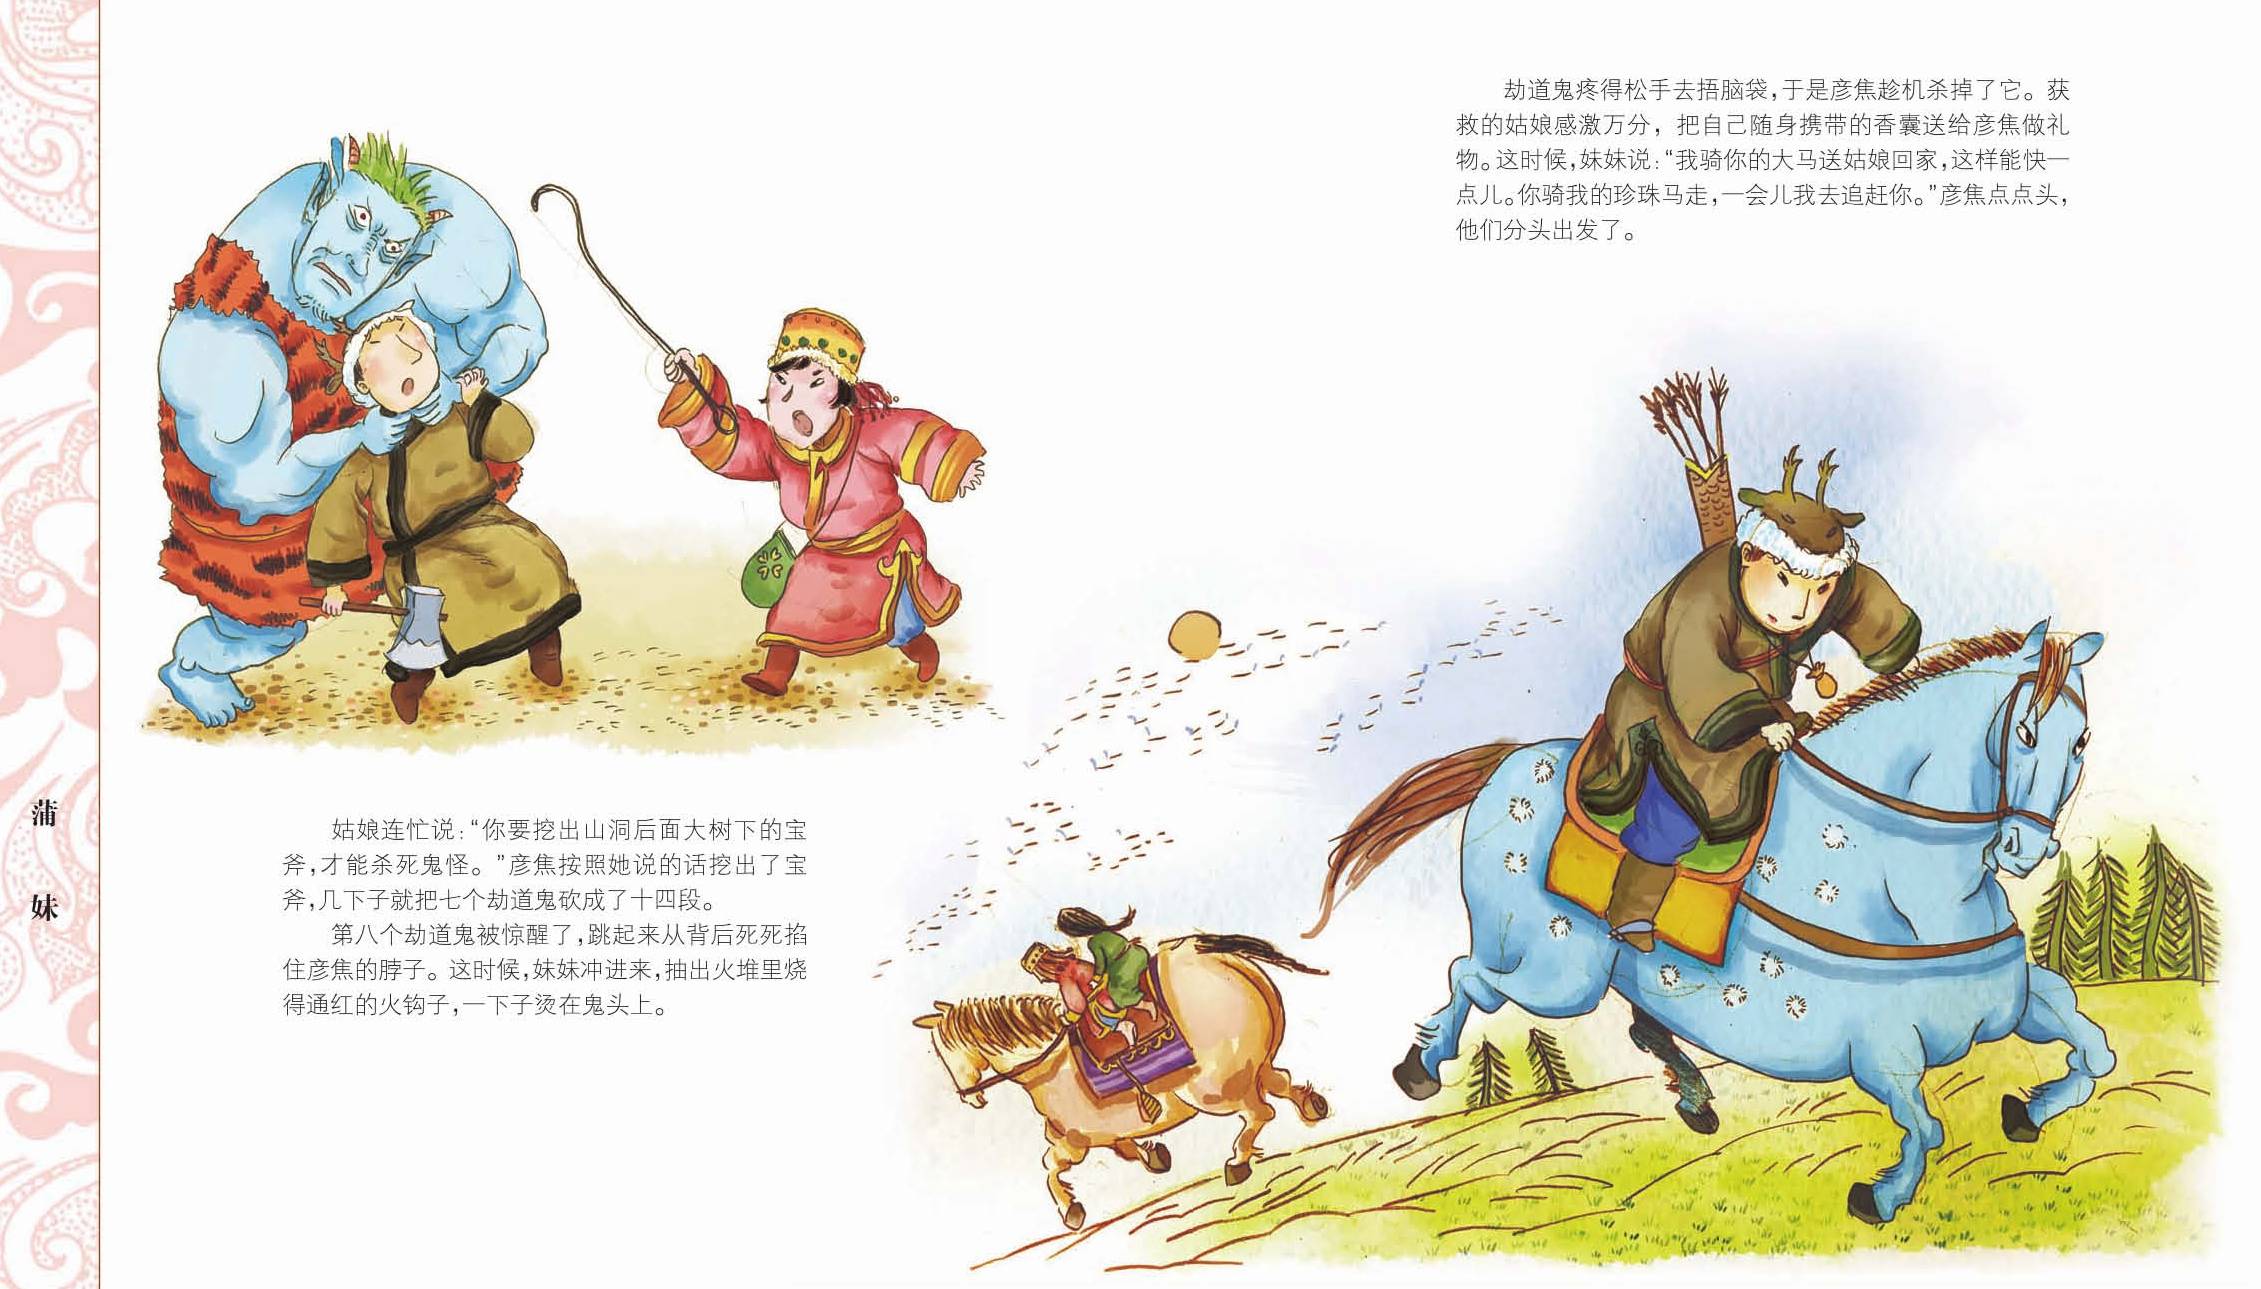 《中国56个民族神话故事典藏—鄂伦春族,鄂温克族,赫哲族卷1》